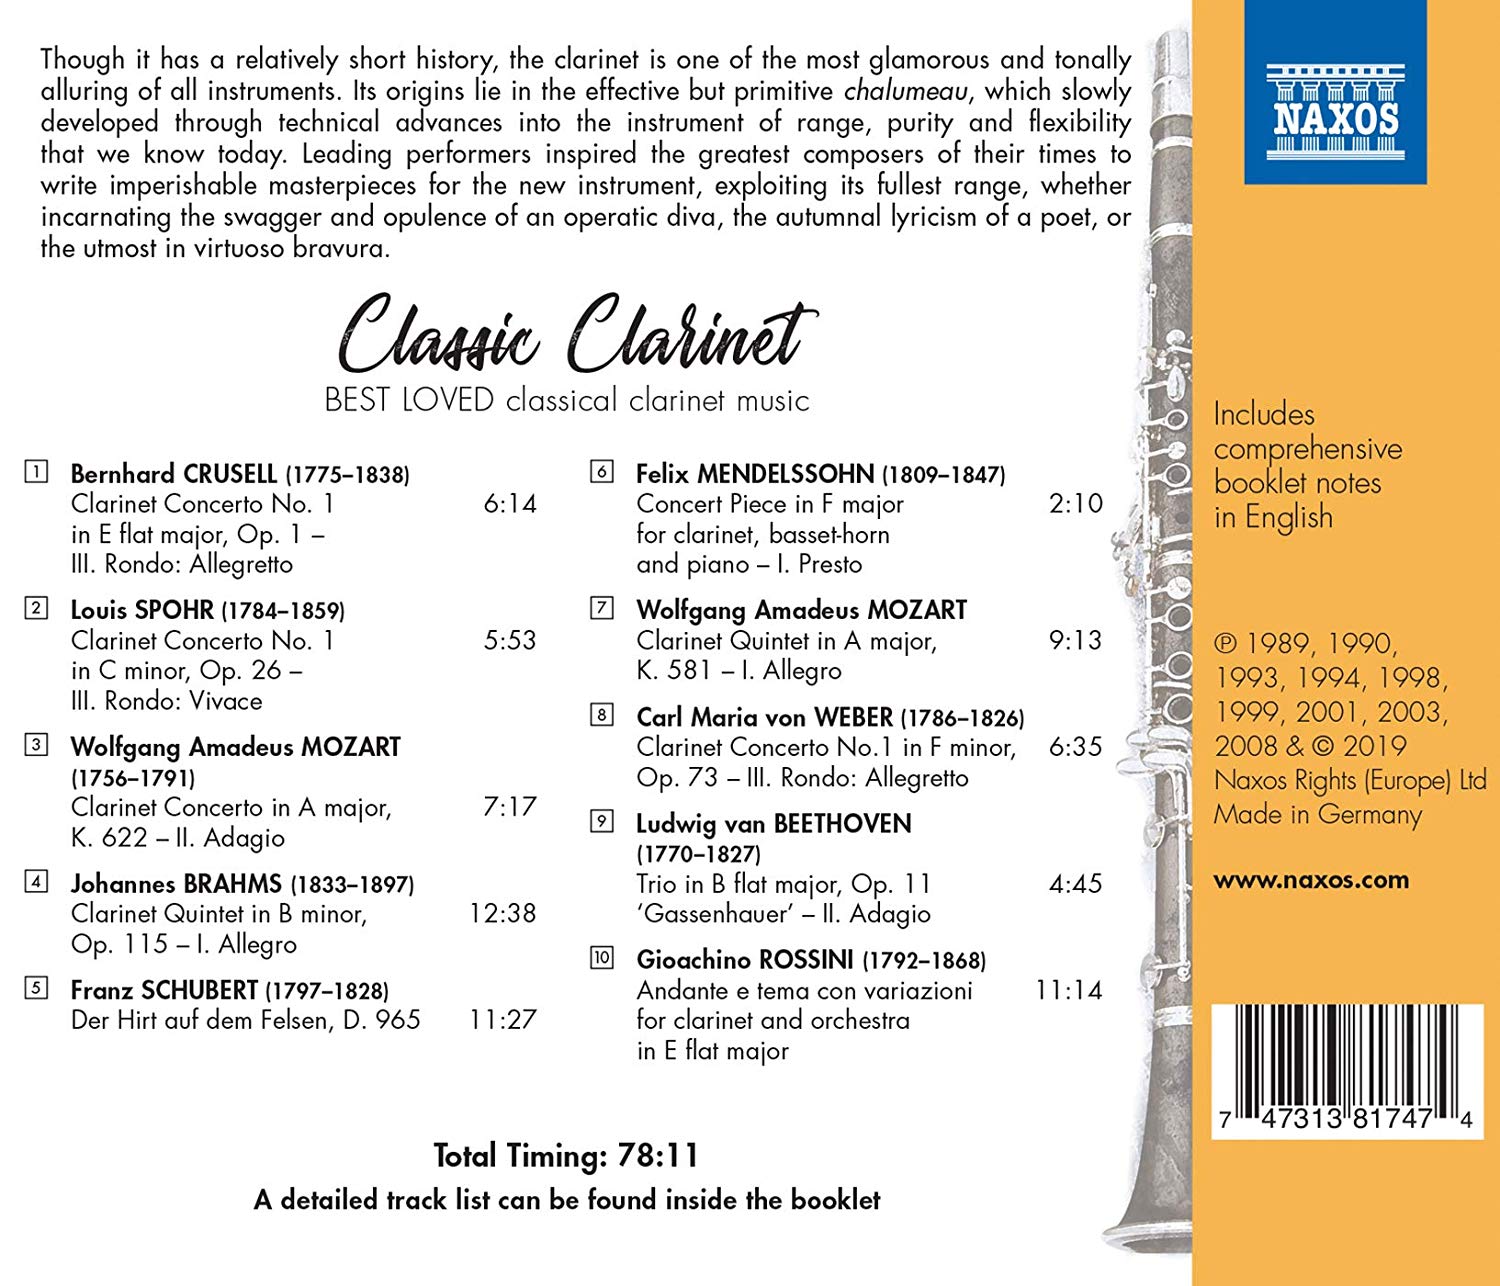 우리가 사랑하는 클라리넷 작품들 (Classic Clarinet - Best Loved classical clarinet music)